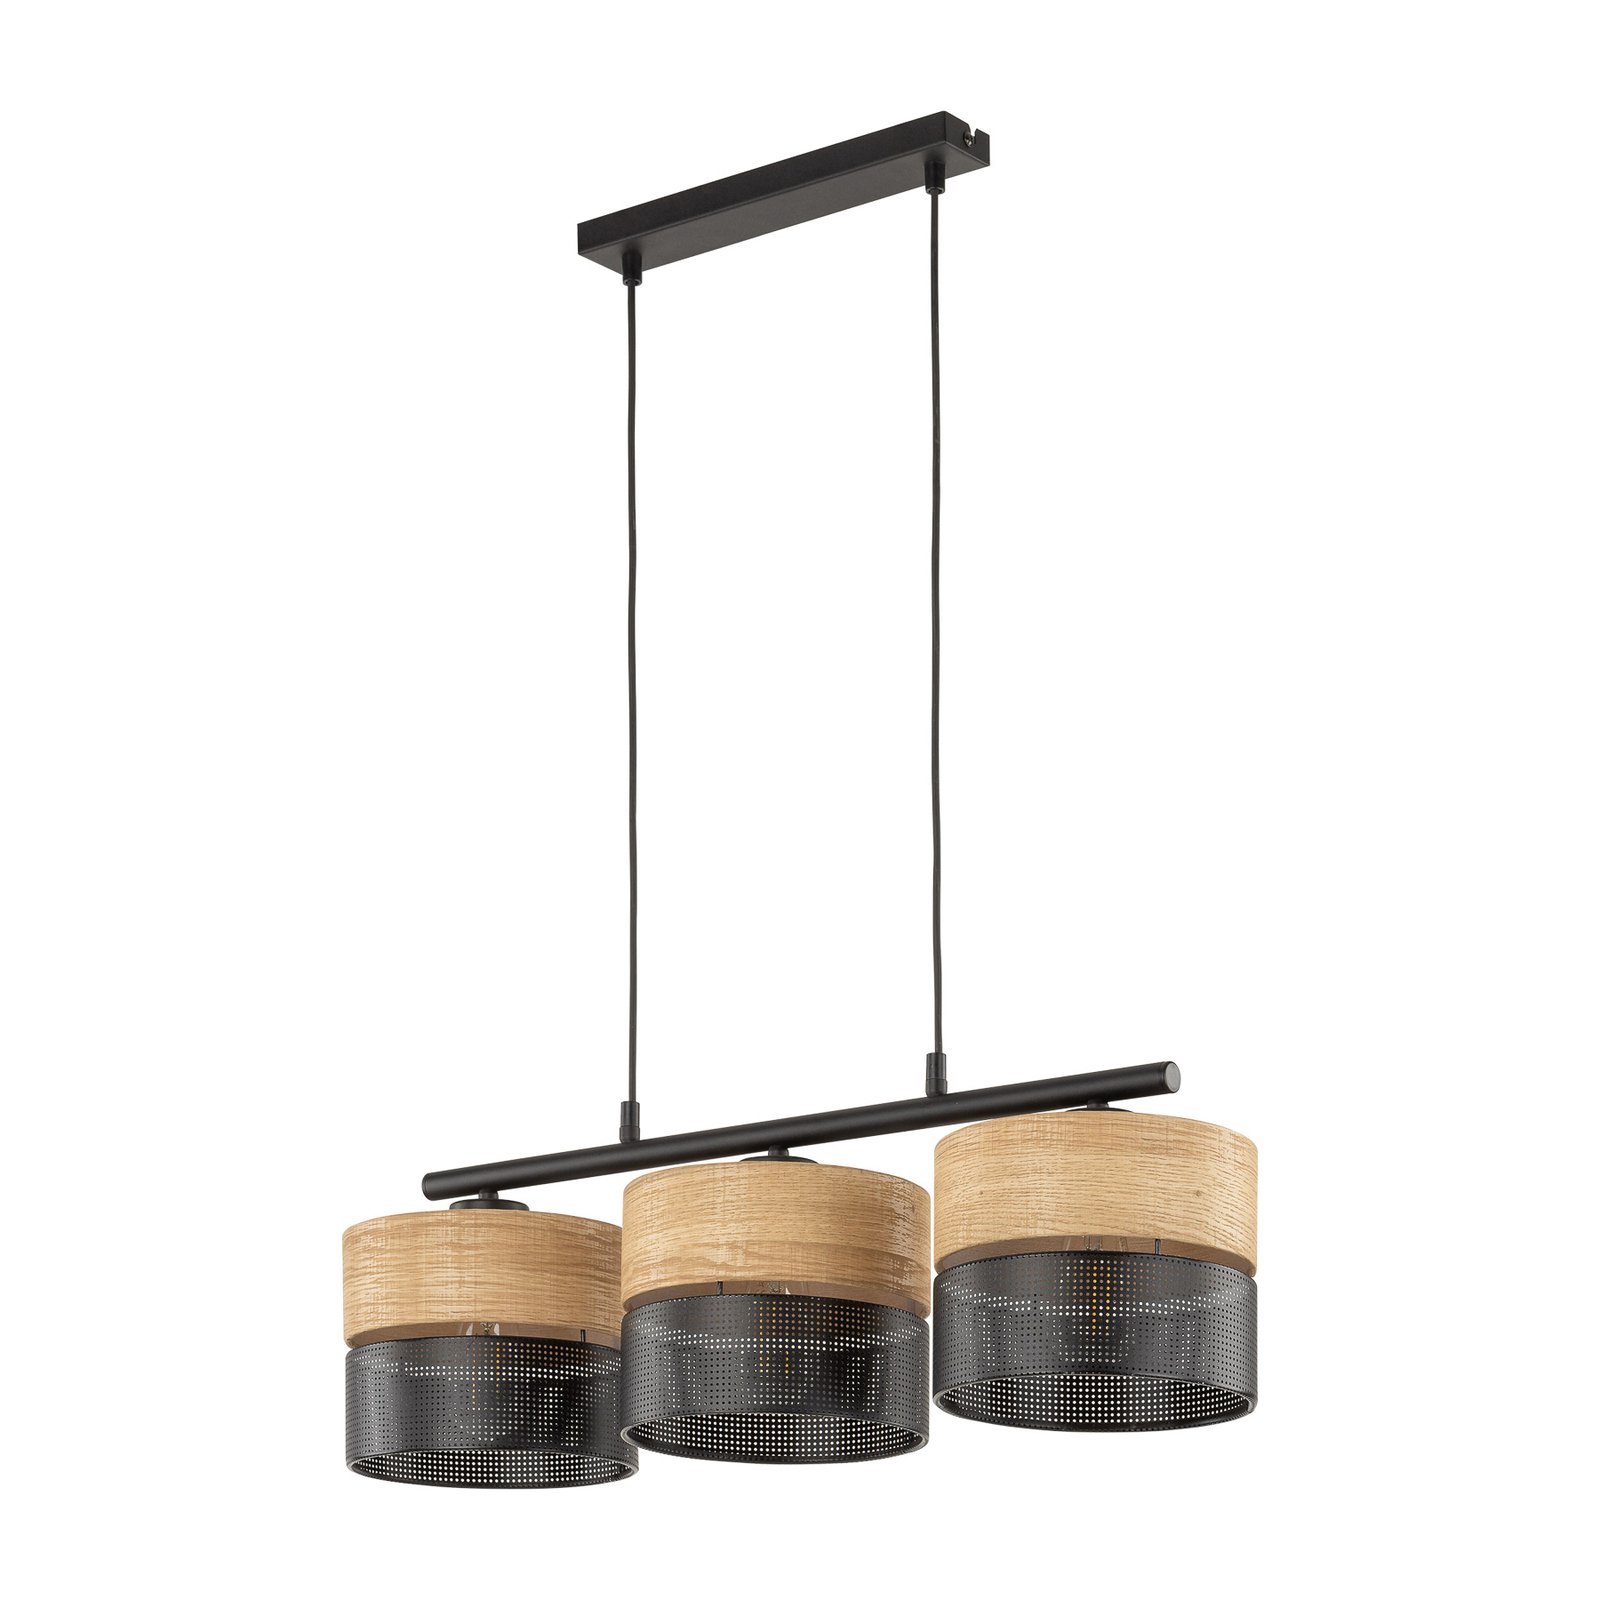 Viseća lampa Nicol, izgled crna/drvo, 70x20 cm 3 žarulje. 3xE27